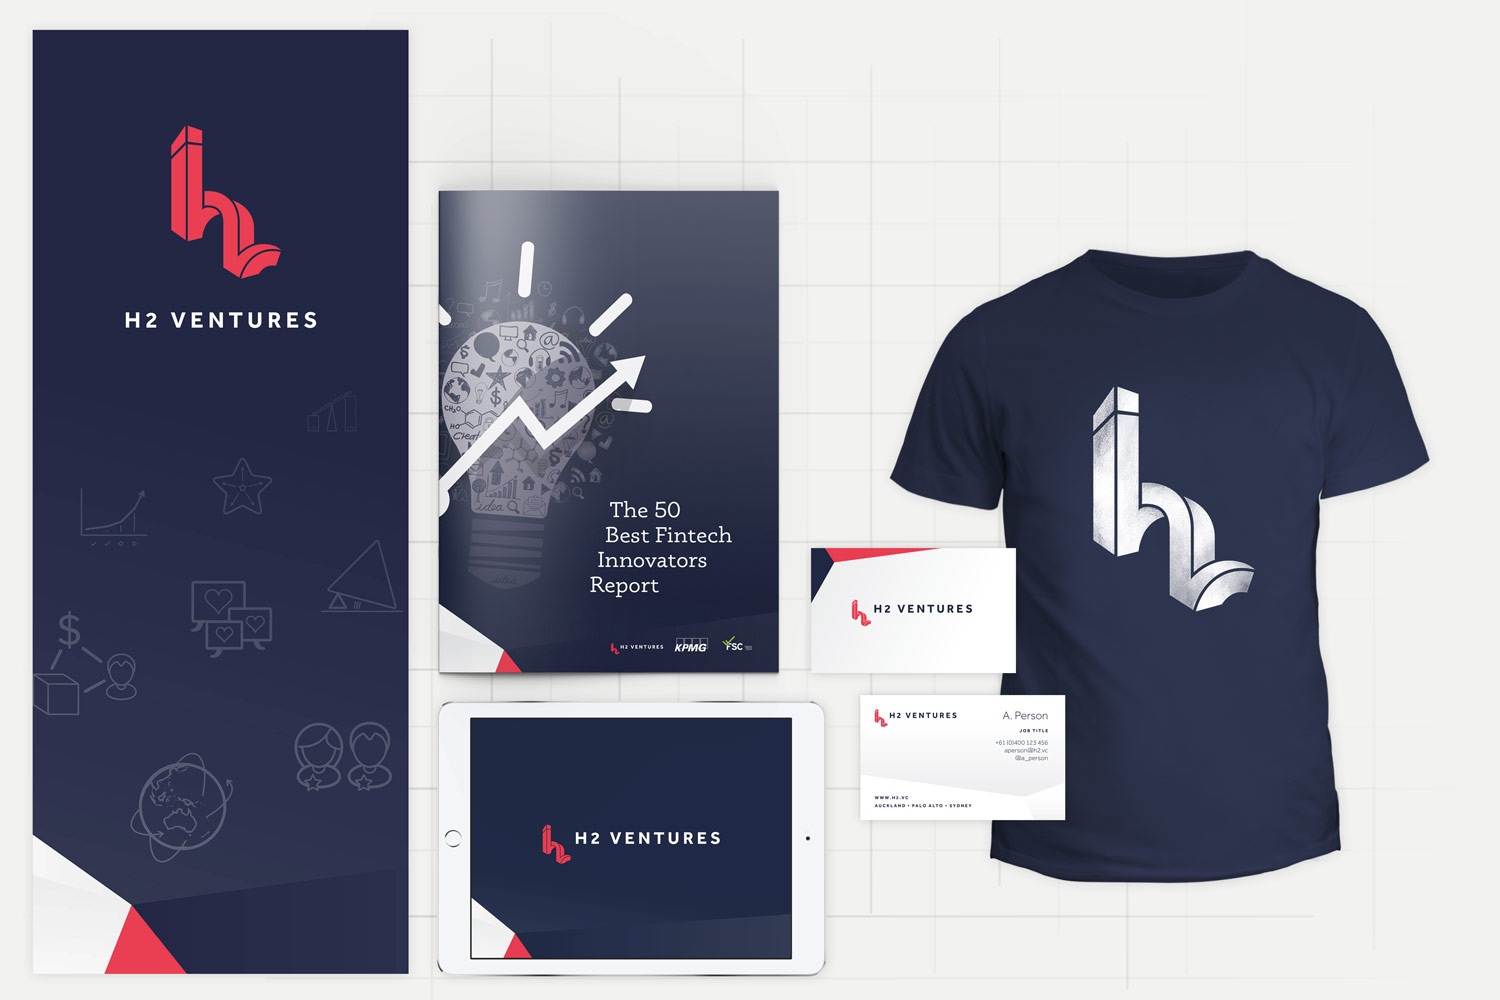 H2 Ventures brand design by Theysaurus